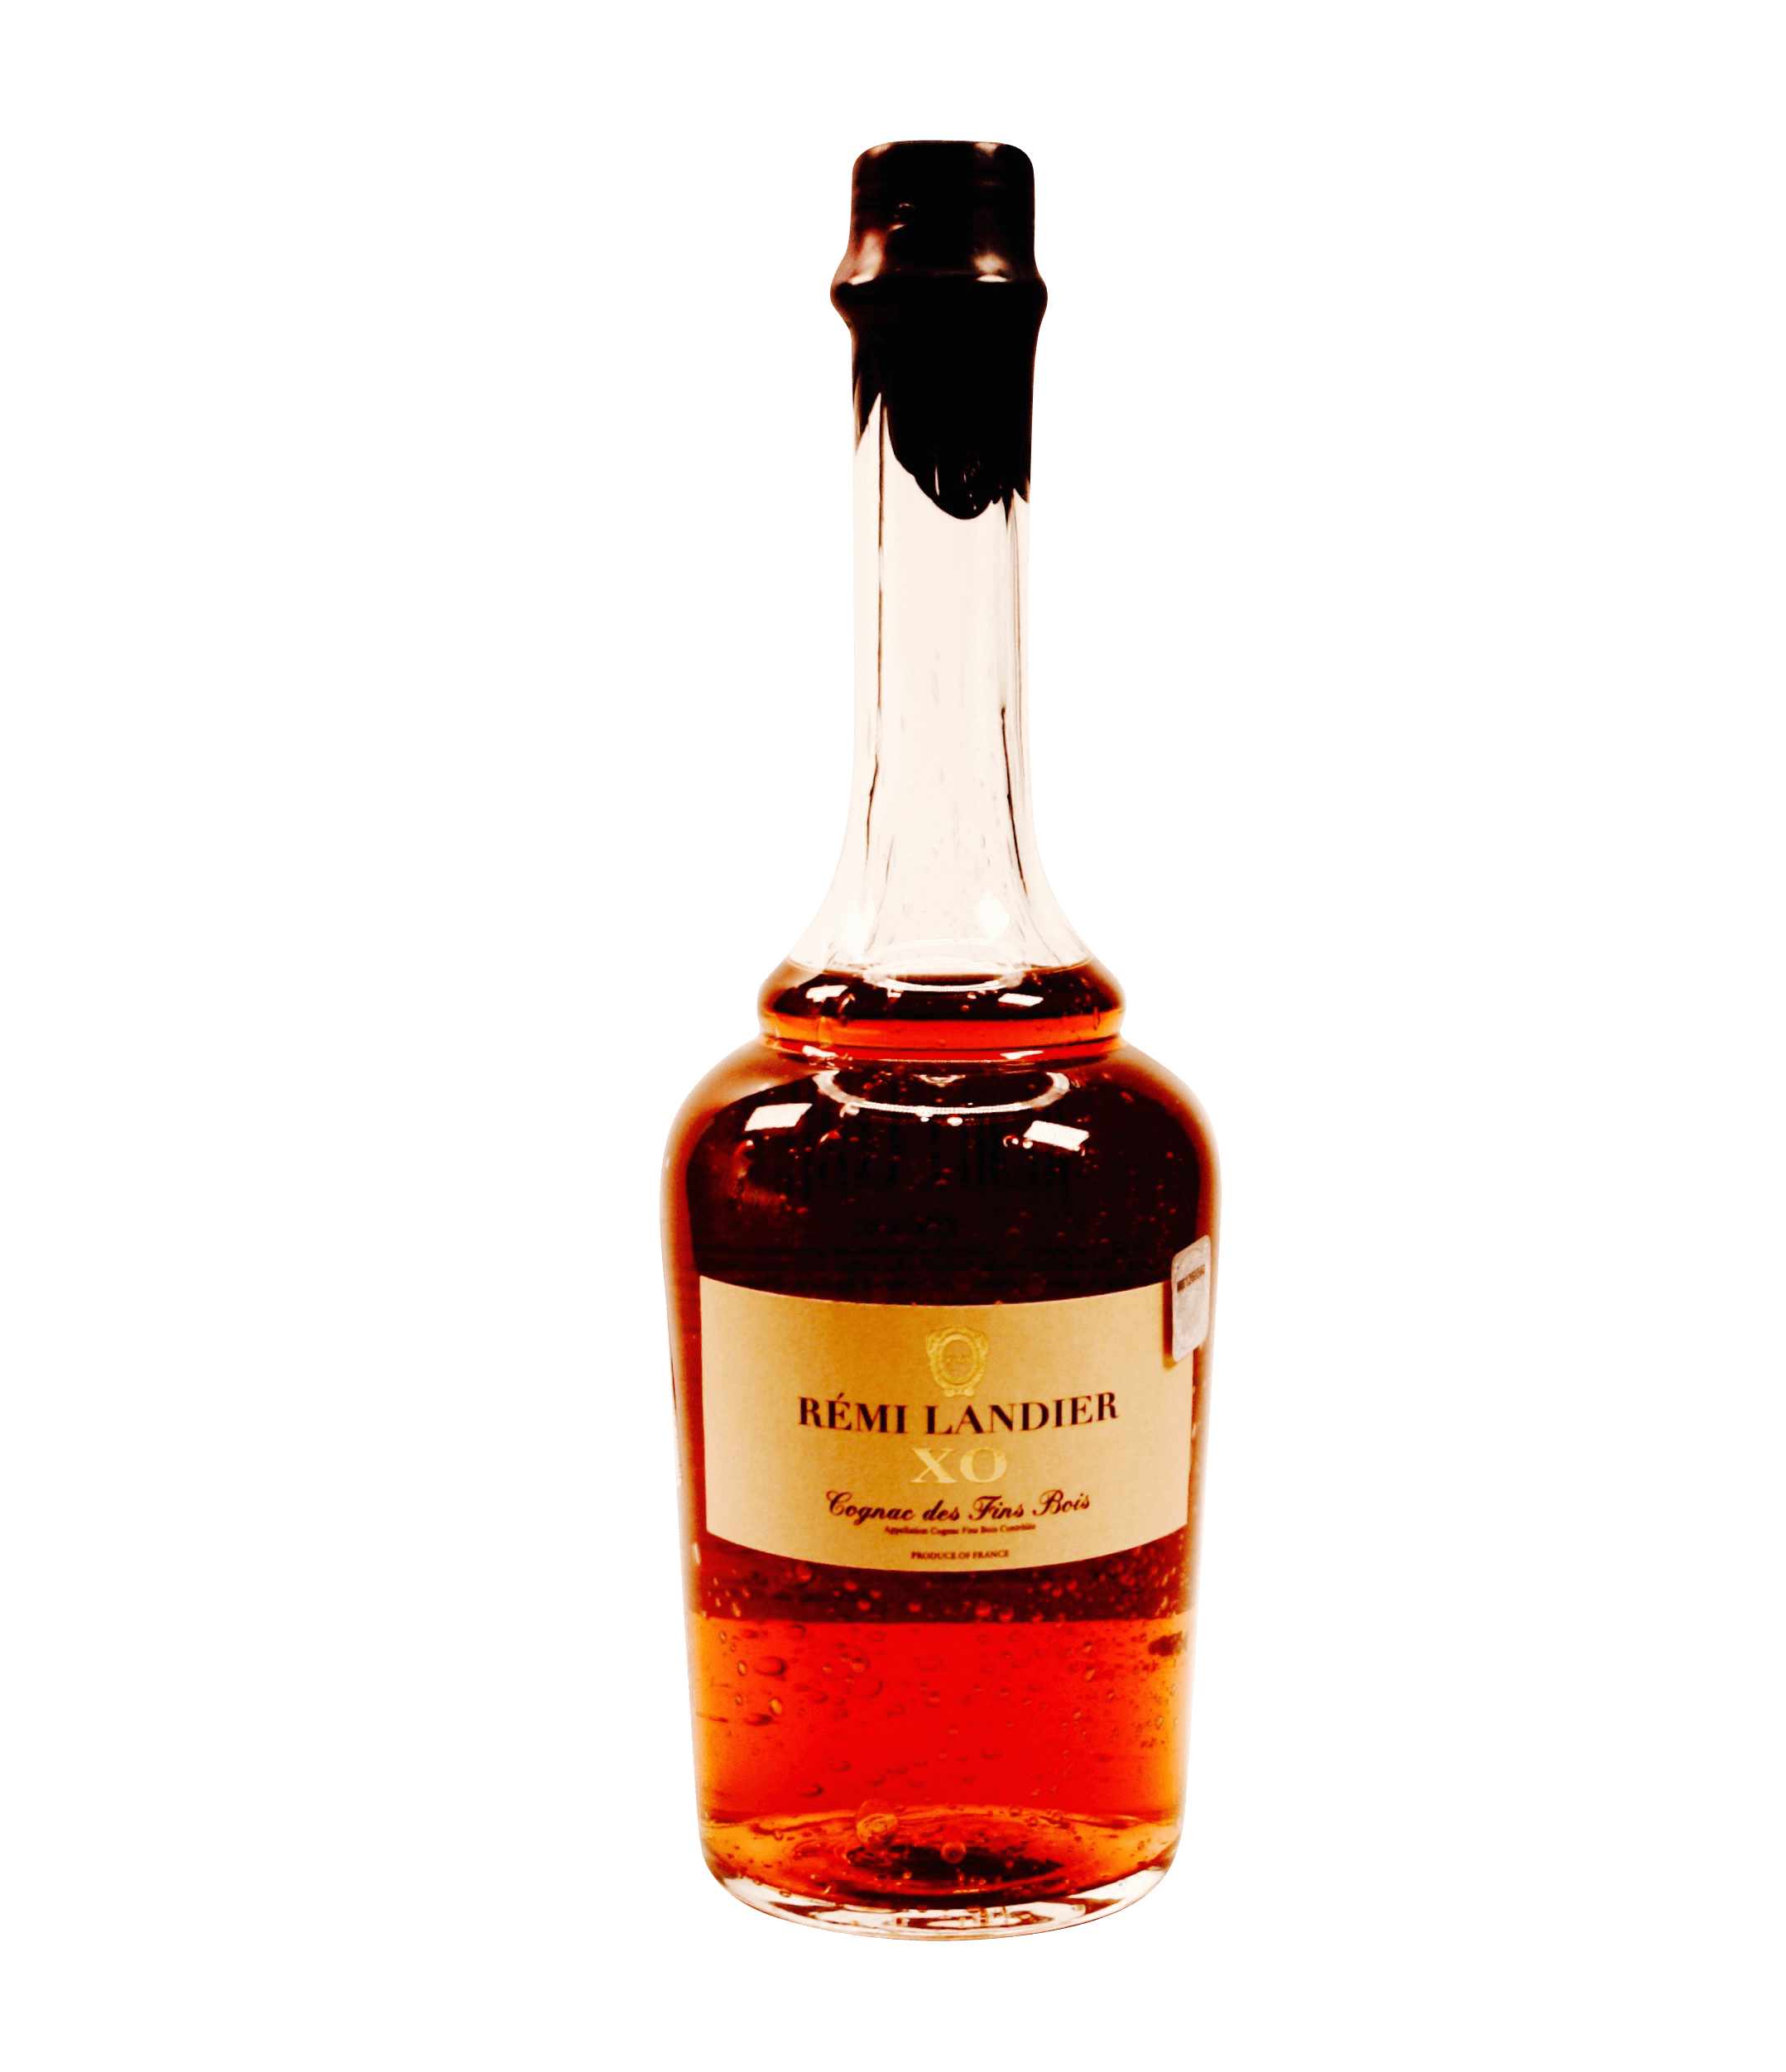 REMI LANDIER XO Cognac des Fins Bois